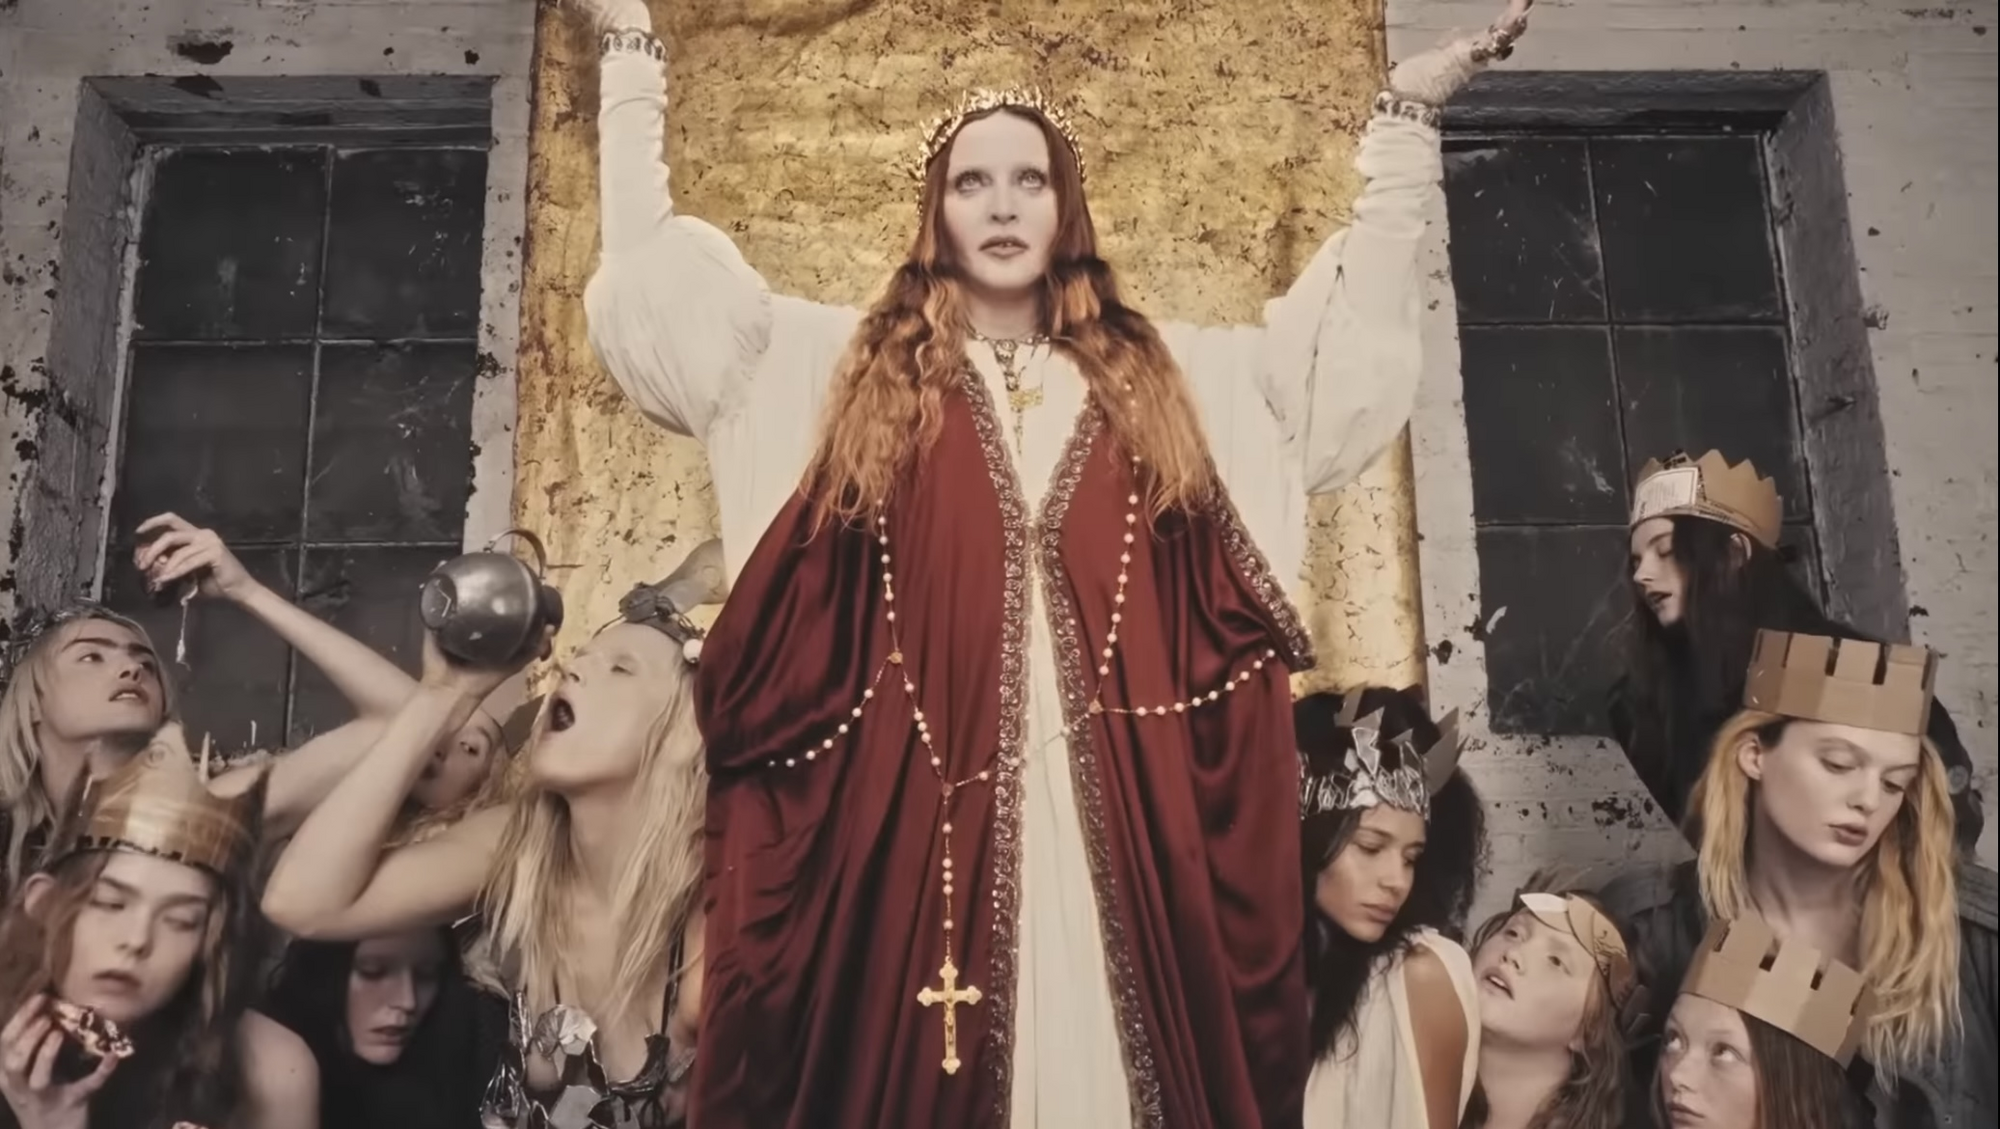 Мадонна выпустила свой музыкальный фильм, в котором появилась в образах Иисуса, Девы Марии и демона. Видео